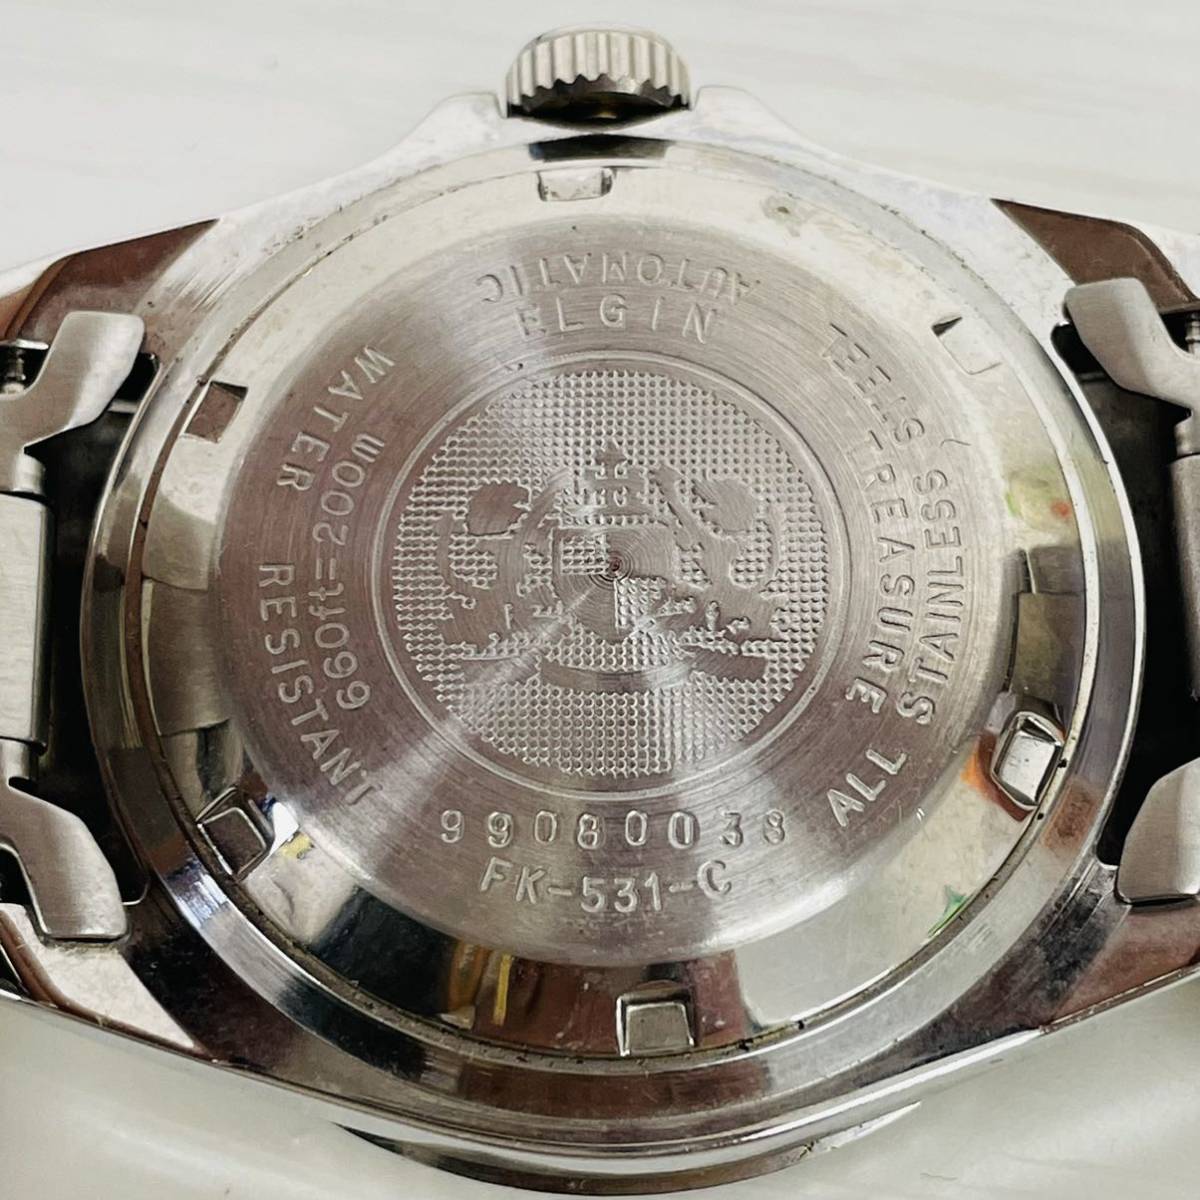 ★ 稼動品 ★ 36 ELGIN エルジン FK-531-C 99080038 メンズ腕時計 腕時計 時計 自動巻き 20気圧防水 青文字盤 3針 デイト表示 シルバー AT_画像5